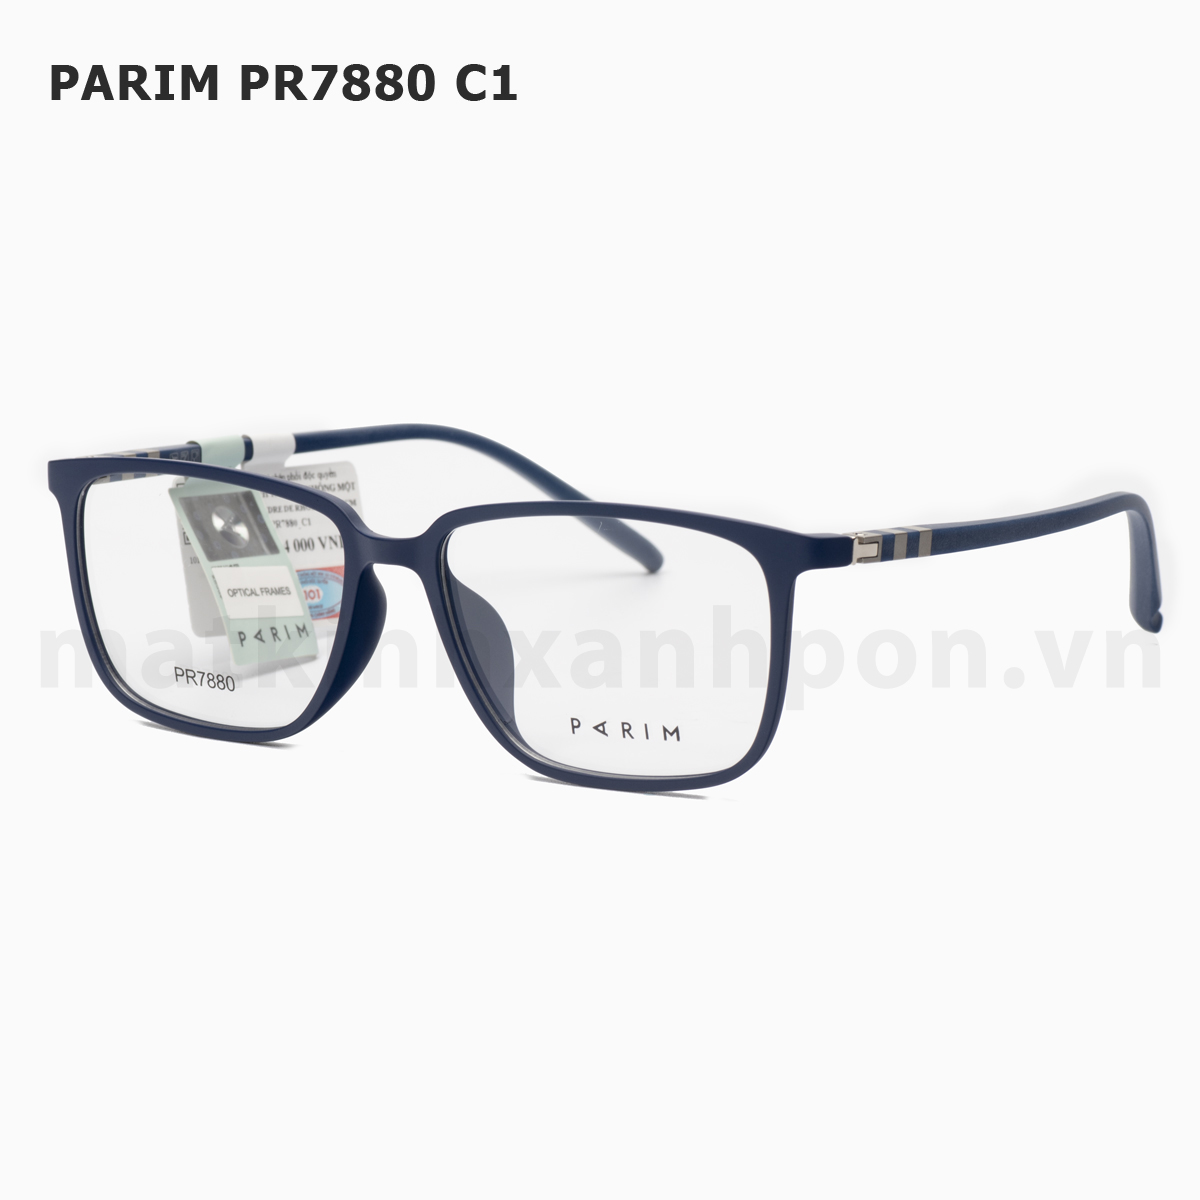 Parim PR7880 C1